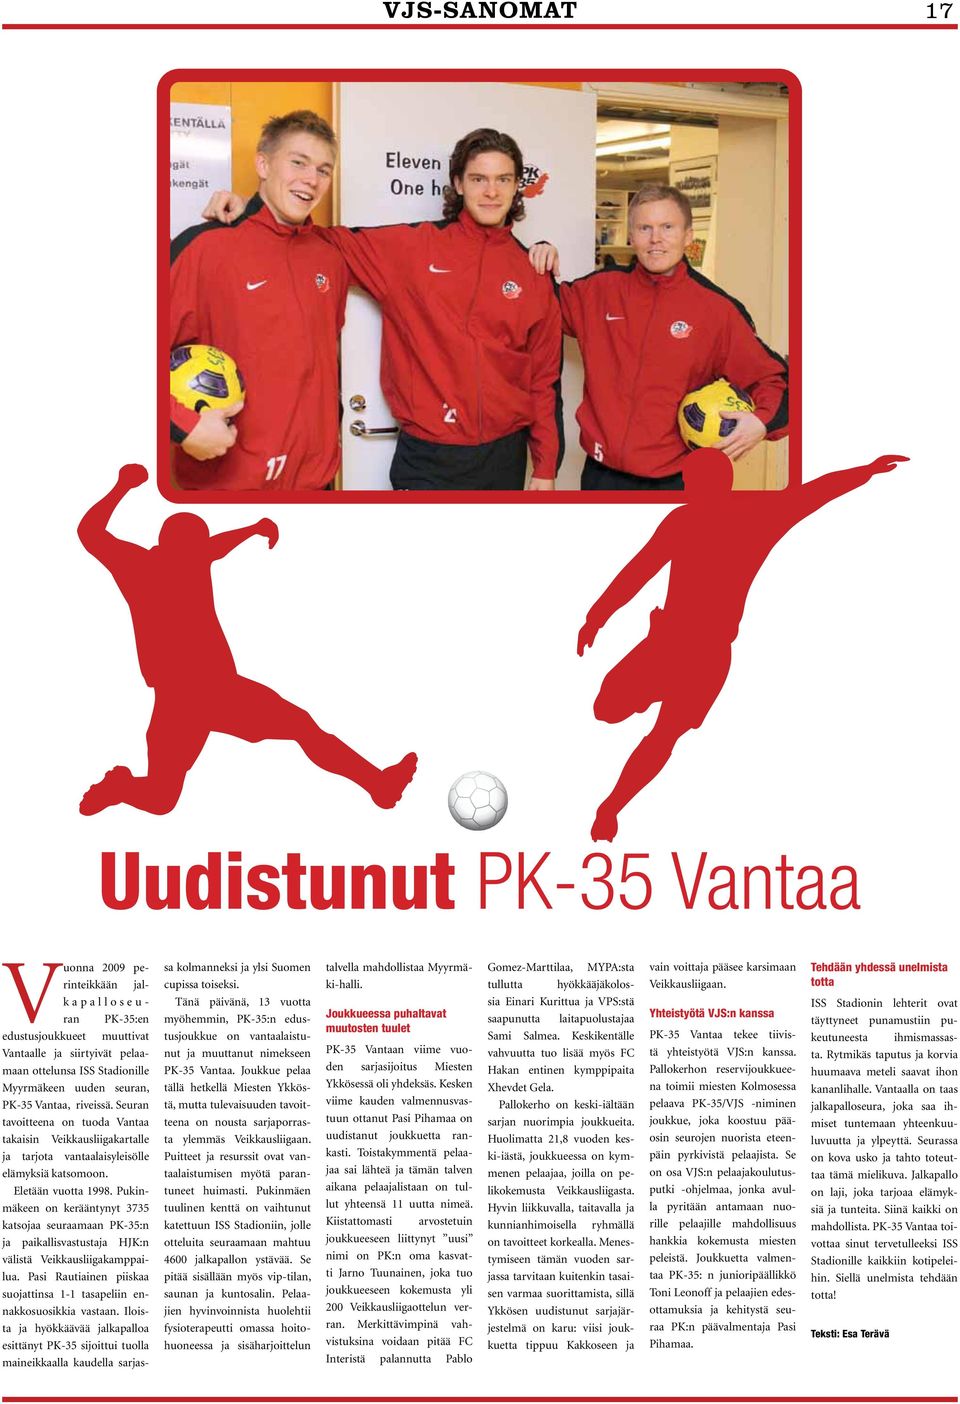 Pukinmäkeen on kerääntynyt 3735 katsojaa seuraamaan PK-35:n ja paikallisvastustaja HJK:n välistä Veikkausliigakamppailua. Pasi Rautiainen piiskaa suojattinsa 1-1 tasapeliin ennakkosuosikkia vastaan.